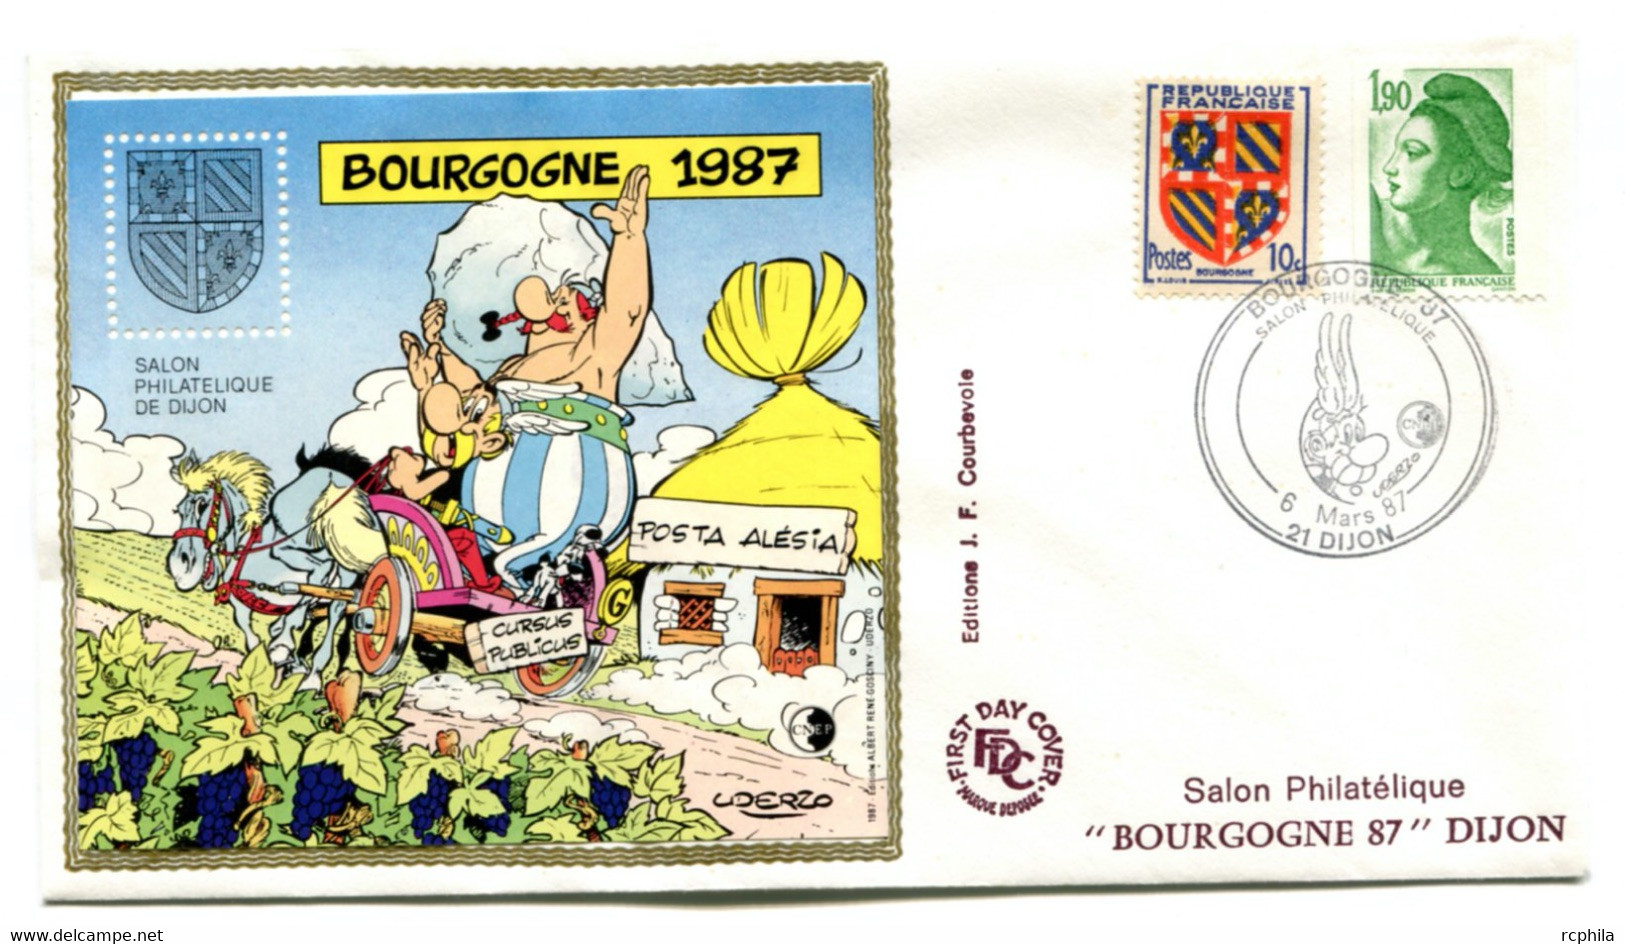 RC 21766 FRANCE BLOC CNEP N° 8 SALON PHILATELIQUE DE DIJON BOURGAGNE 1987 ASTERIX SUR ENVELOPPE 1er JOUR - TB - CNEP